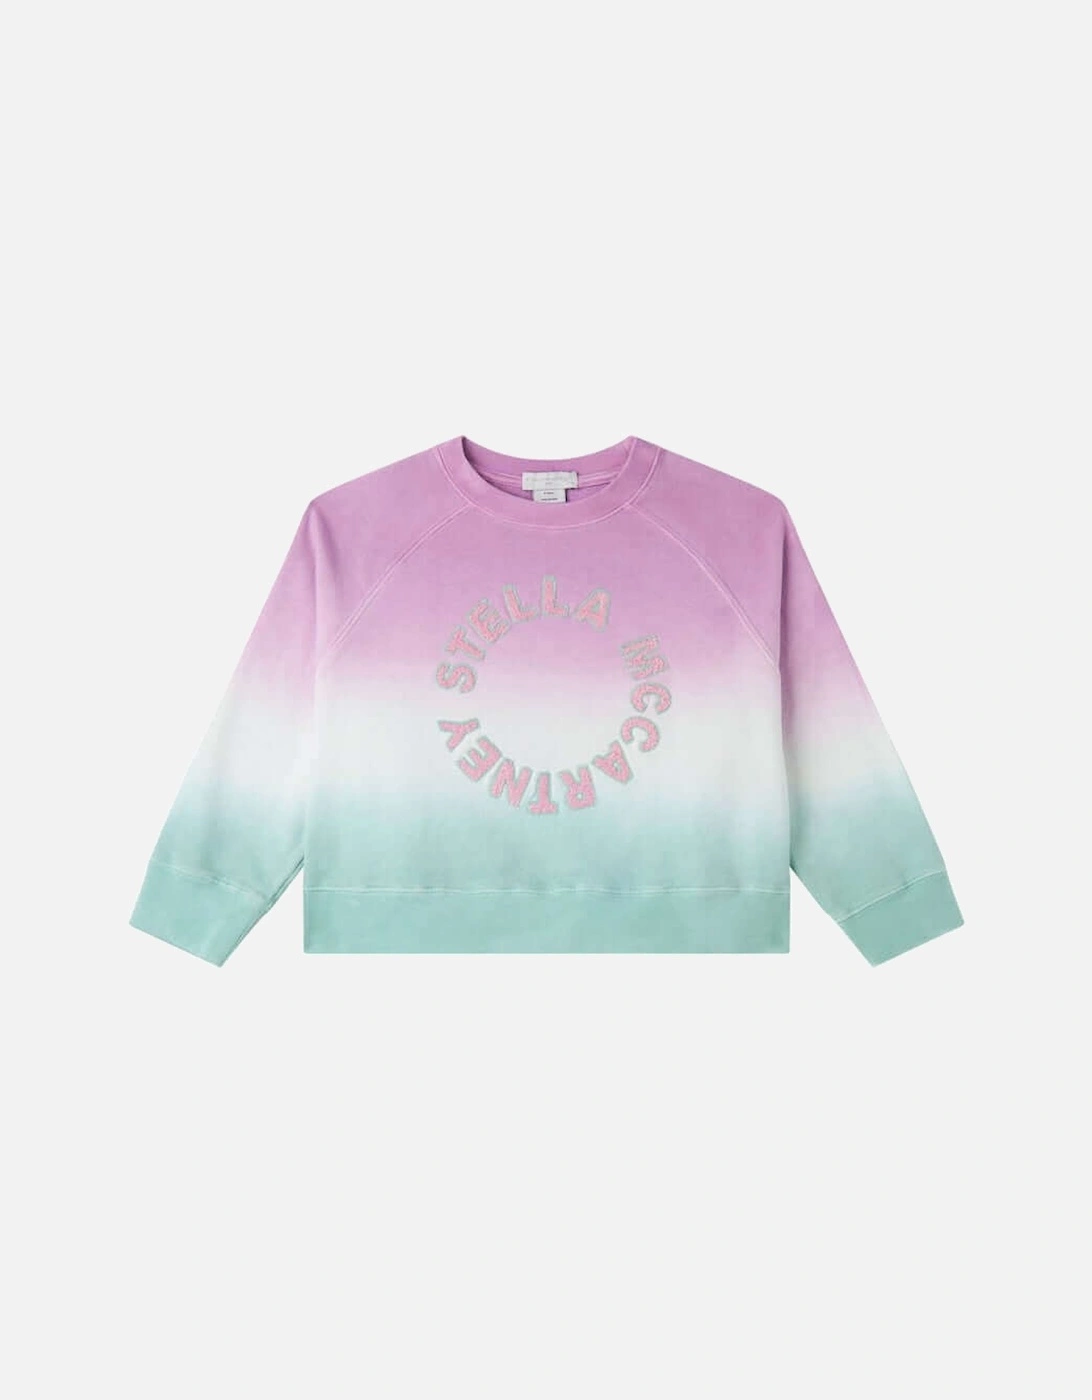 Girls Pink Ombre Sweatshirt, 2 of 1